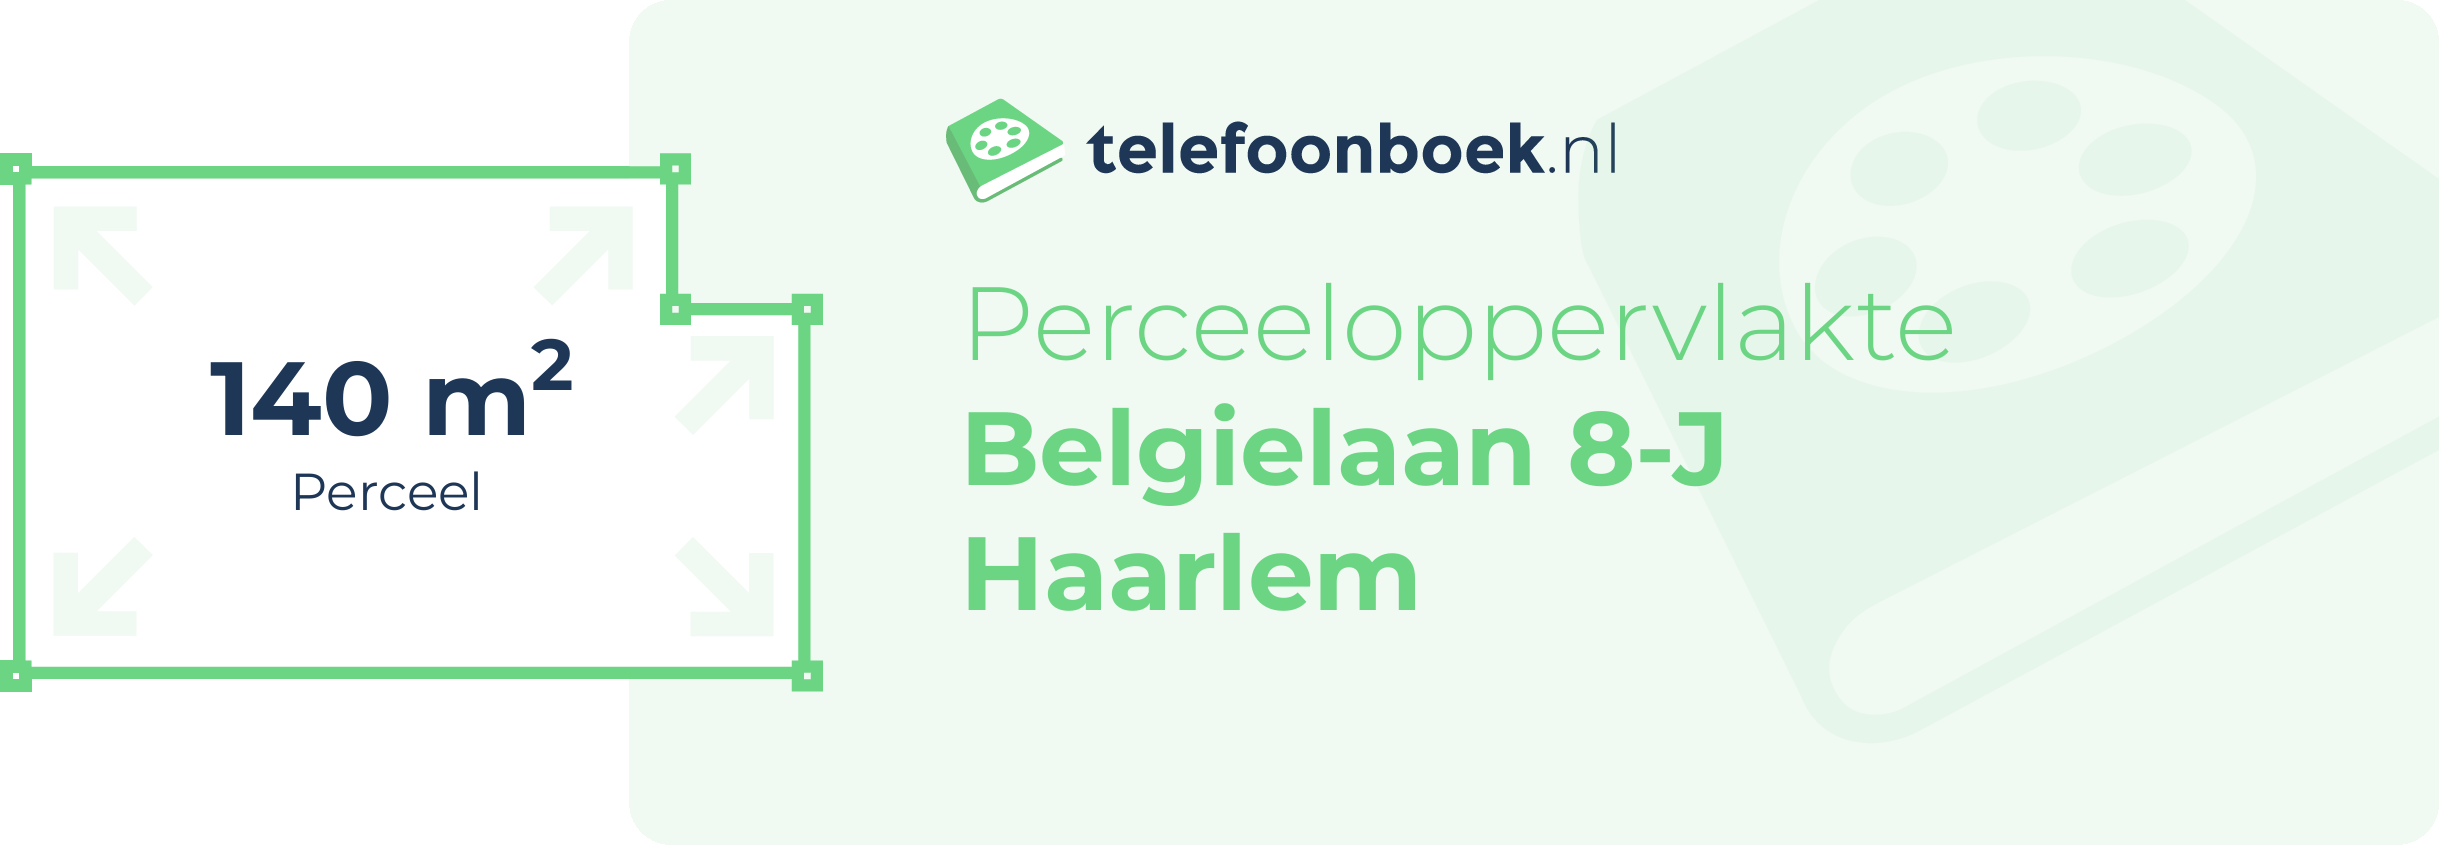 Perceeloppervlakte Belgielaan 8-J Haarlem